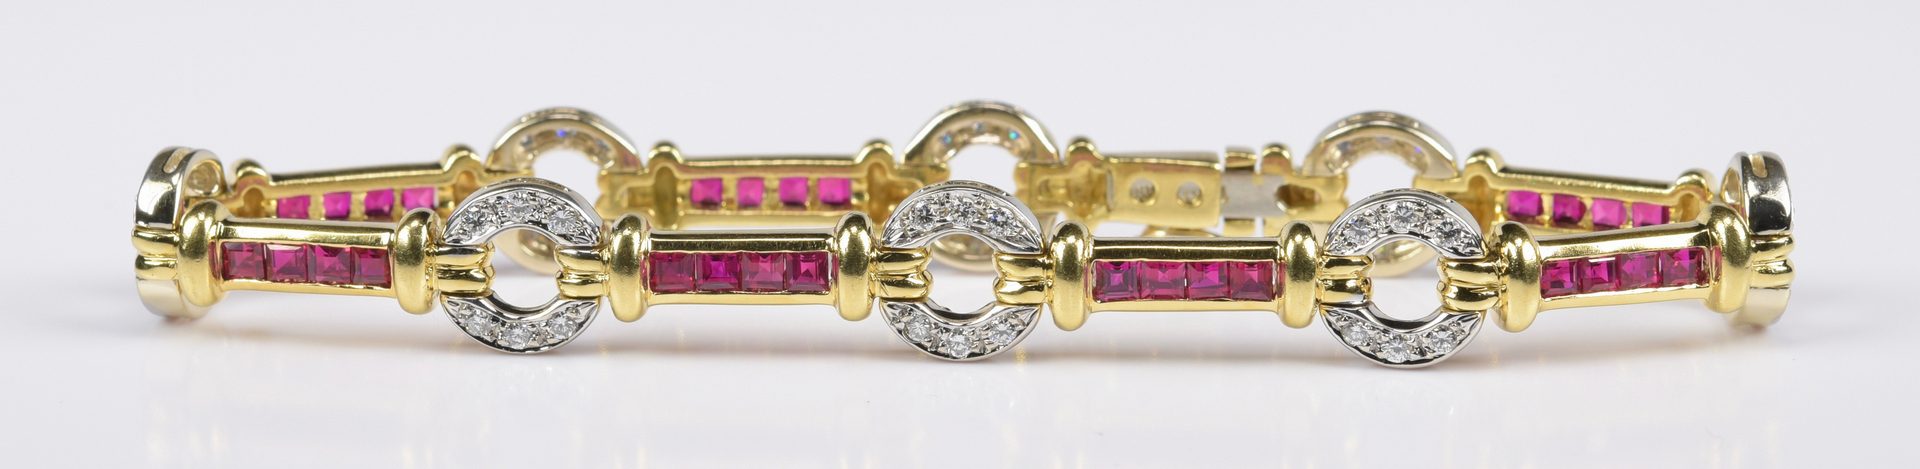 Lot 417: Ruby and Diamond 18K Link Bracelet